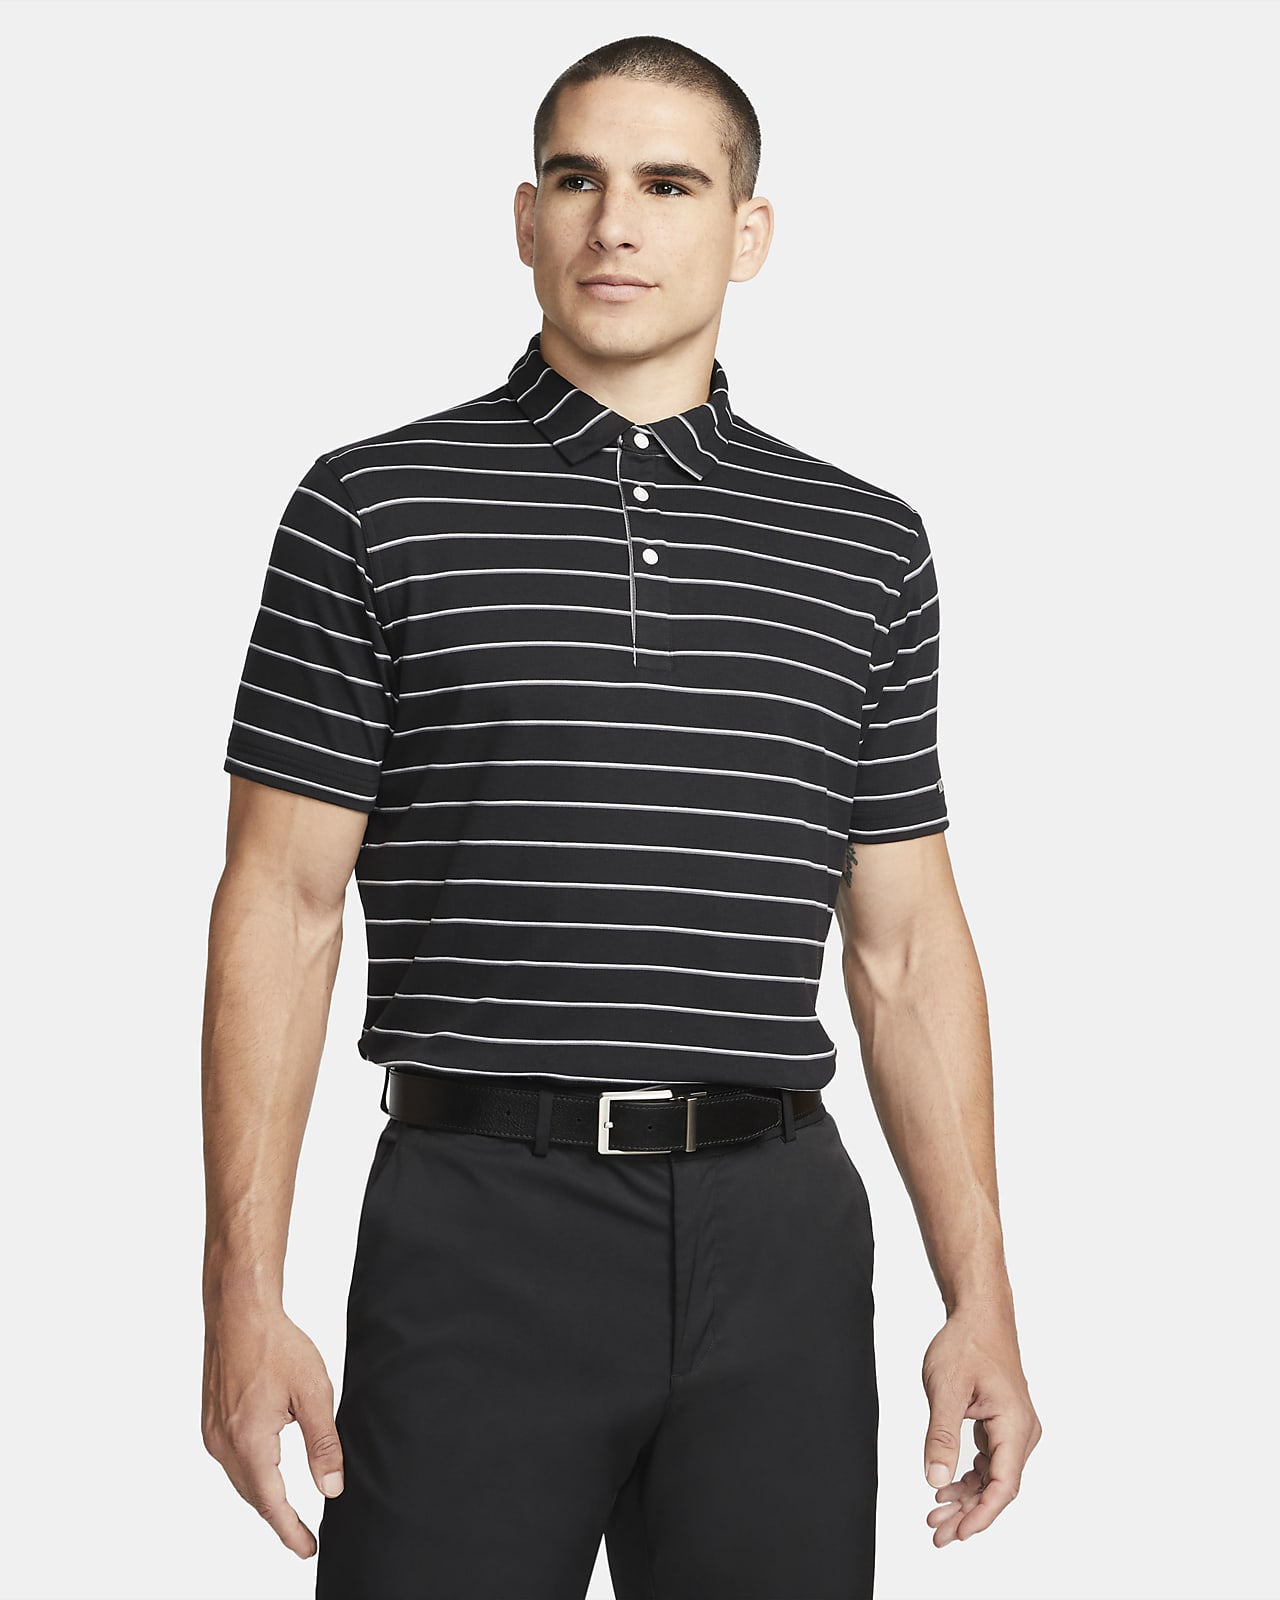 Nike Dri-FIT Player Men's Striped Golf Polo